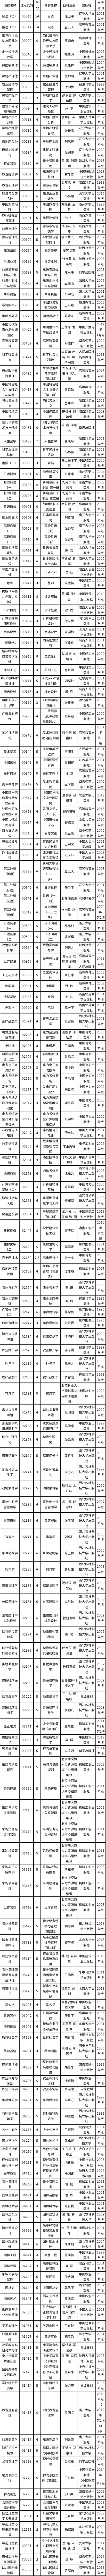 陕西省2023年上半年自学考试省考课程使用的教材目录